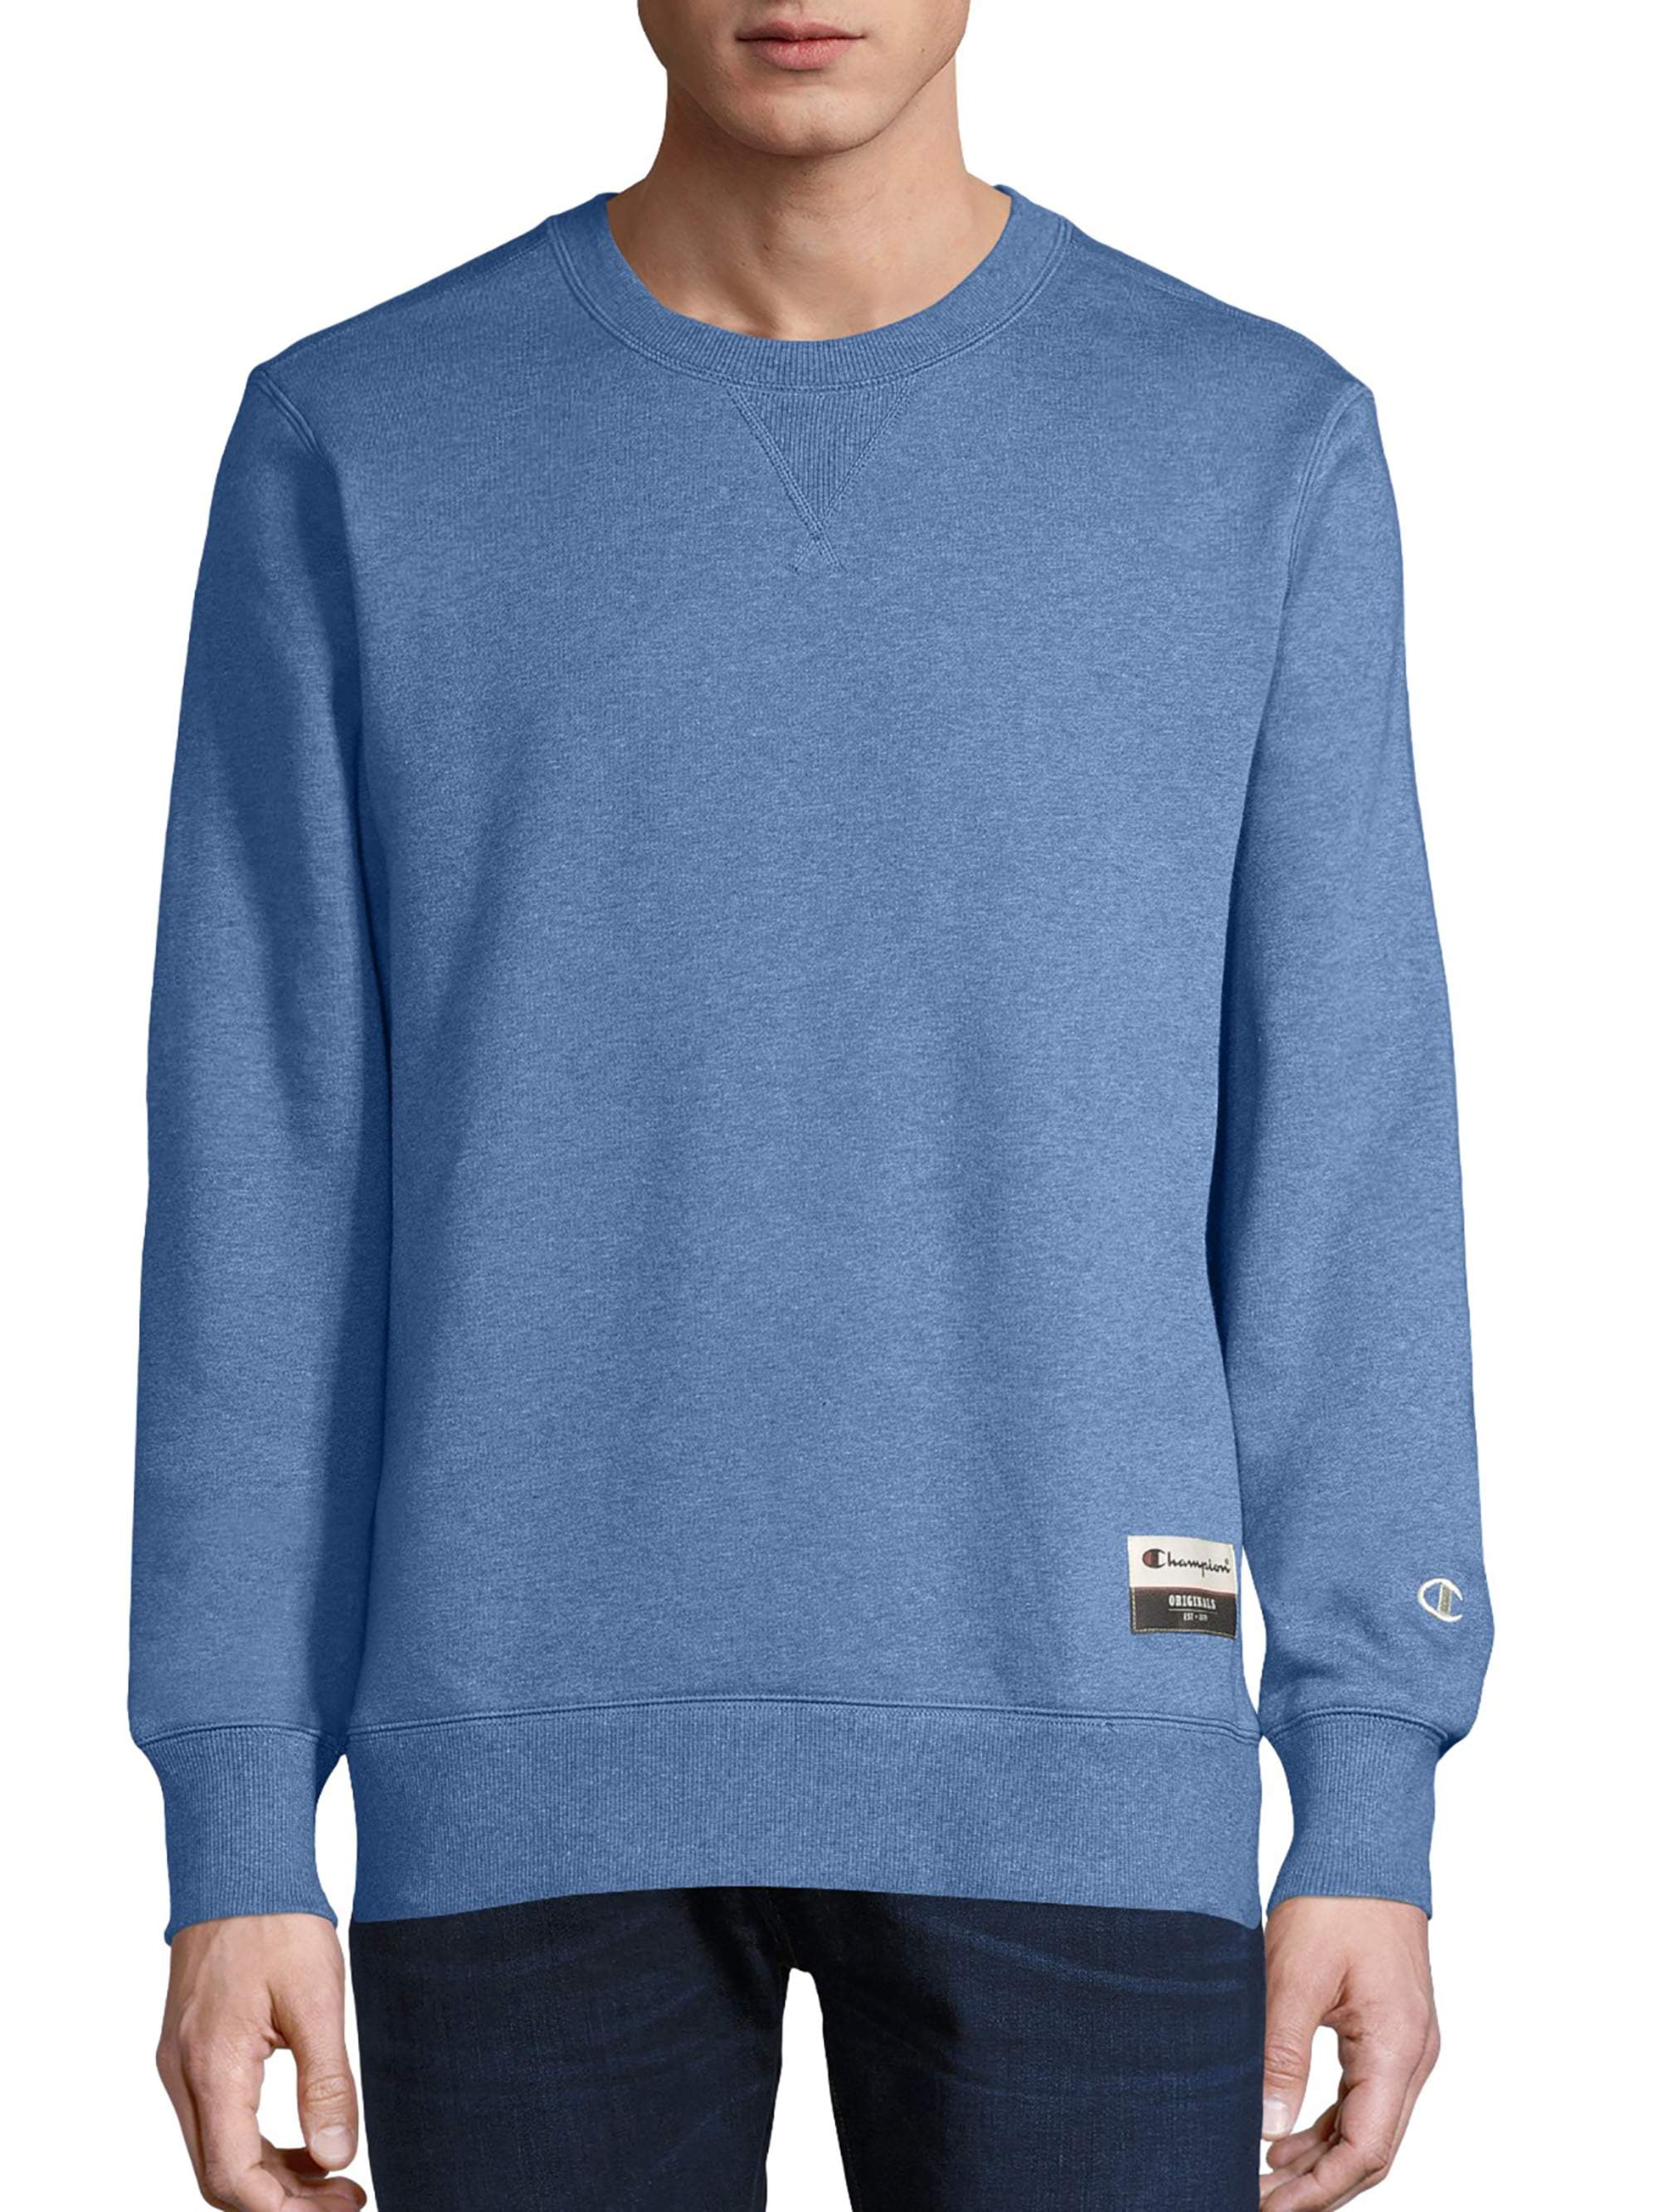 Champion Men's Sueded Fleece Sweatshirt, up to Size 3XL - Walmart.com